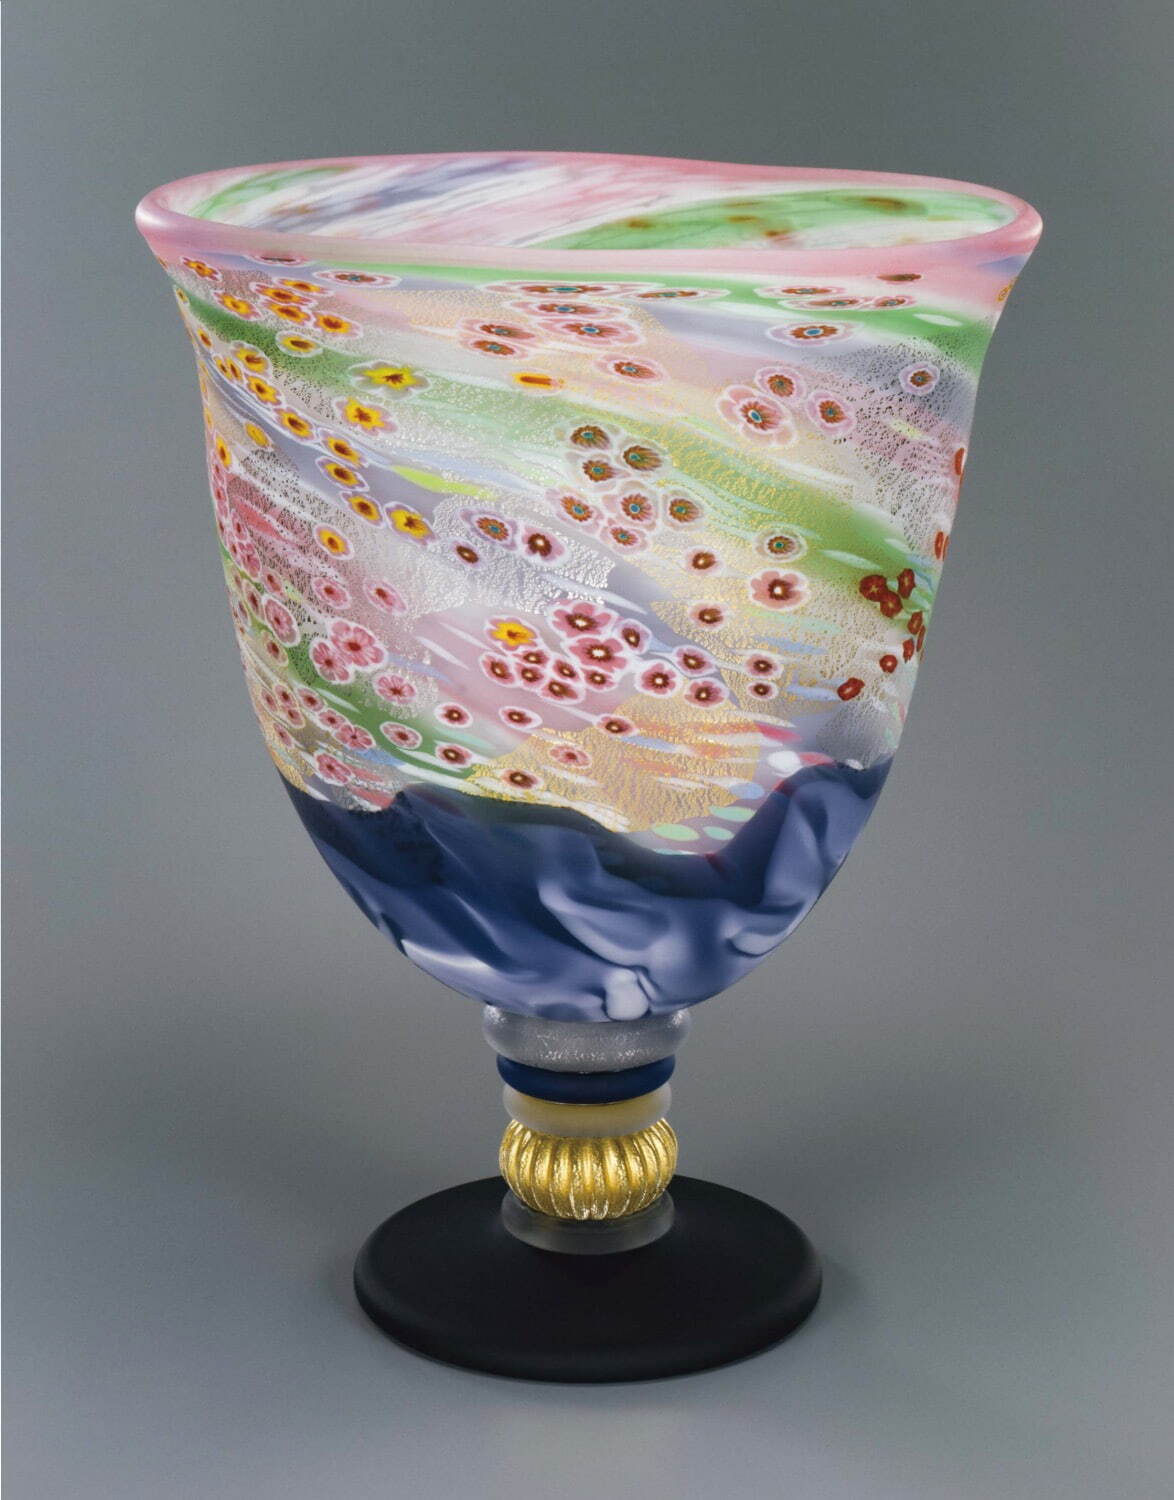 桃李美術品ガラス作家もの石井康治の凛とした中にも華やかさをひめたブルーが映える一品です